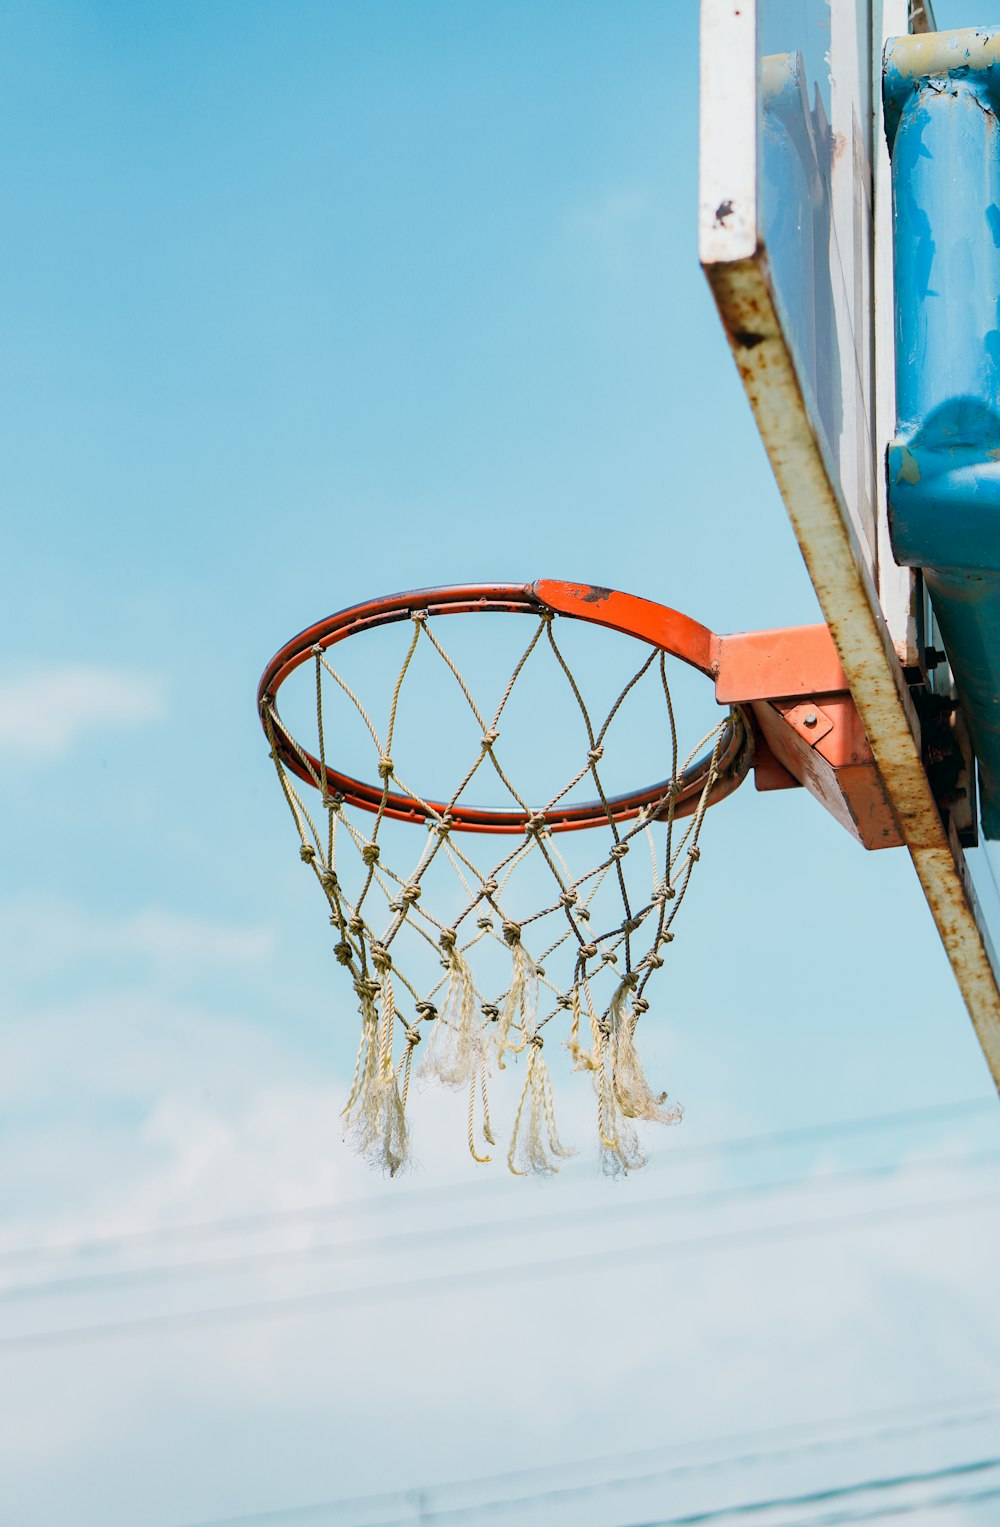 Aro de baloncesto naranja bajo el cielo azul durante el día